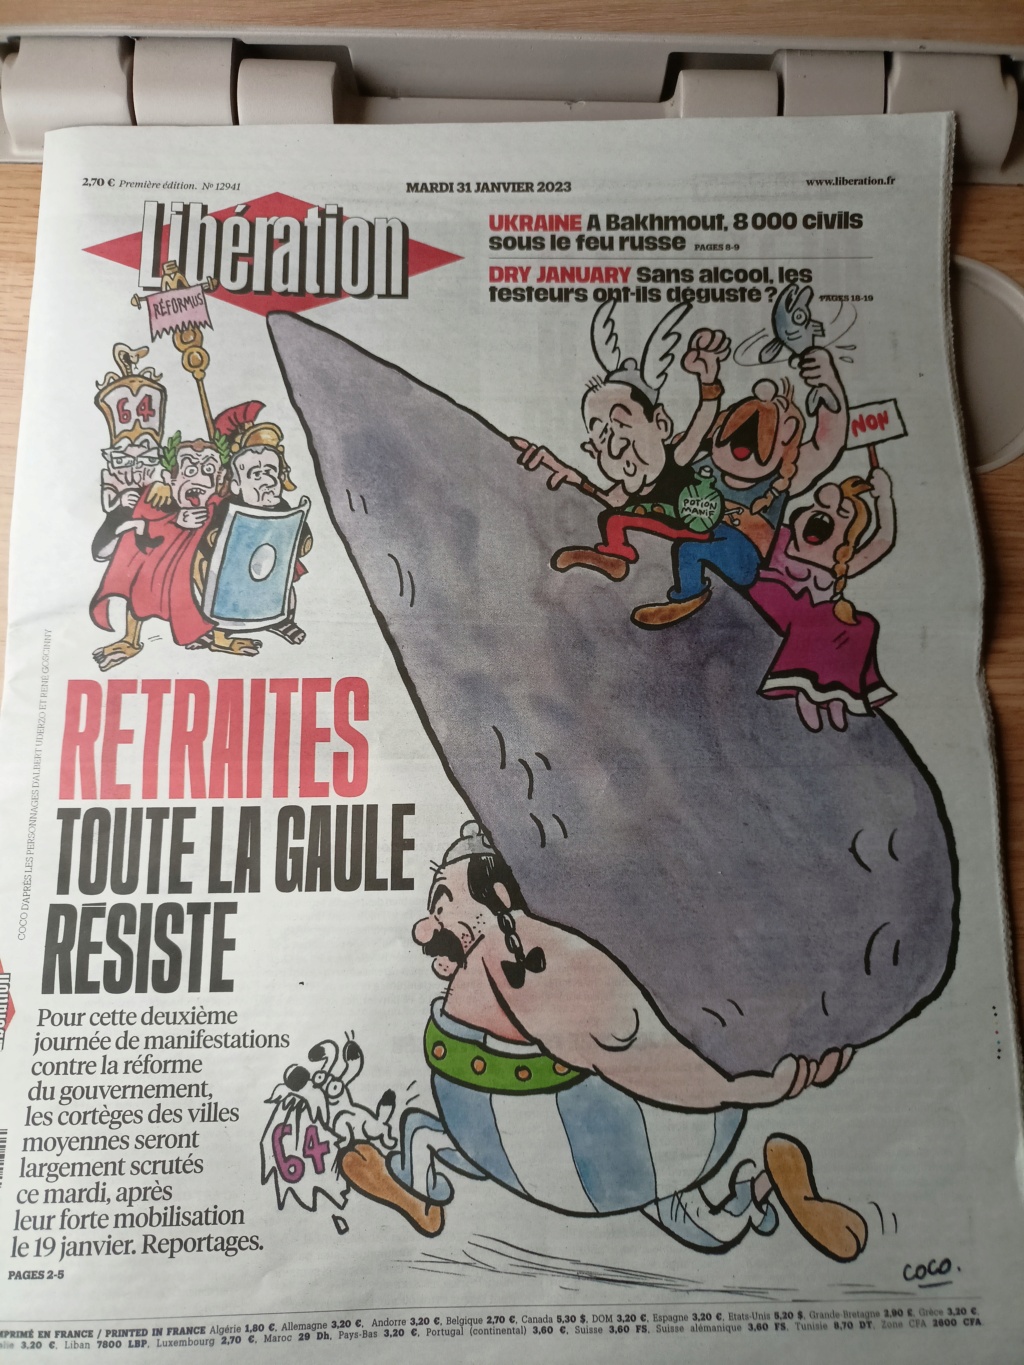 Couverture de Libération aujourd'hui  Img20107